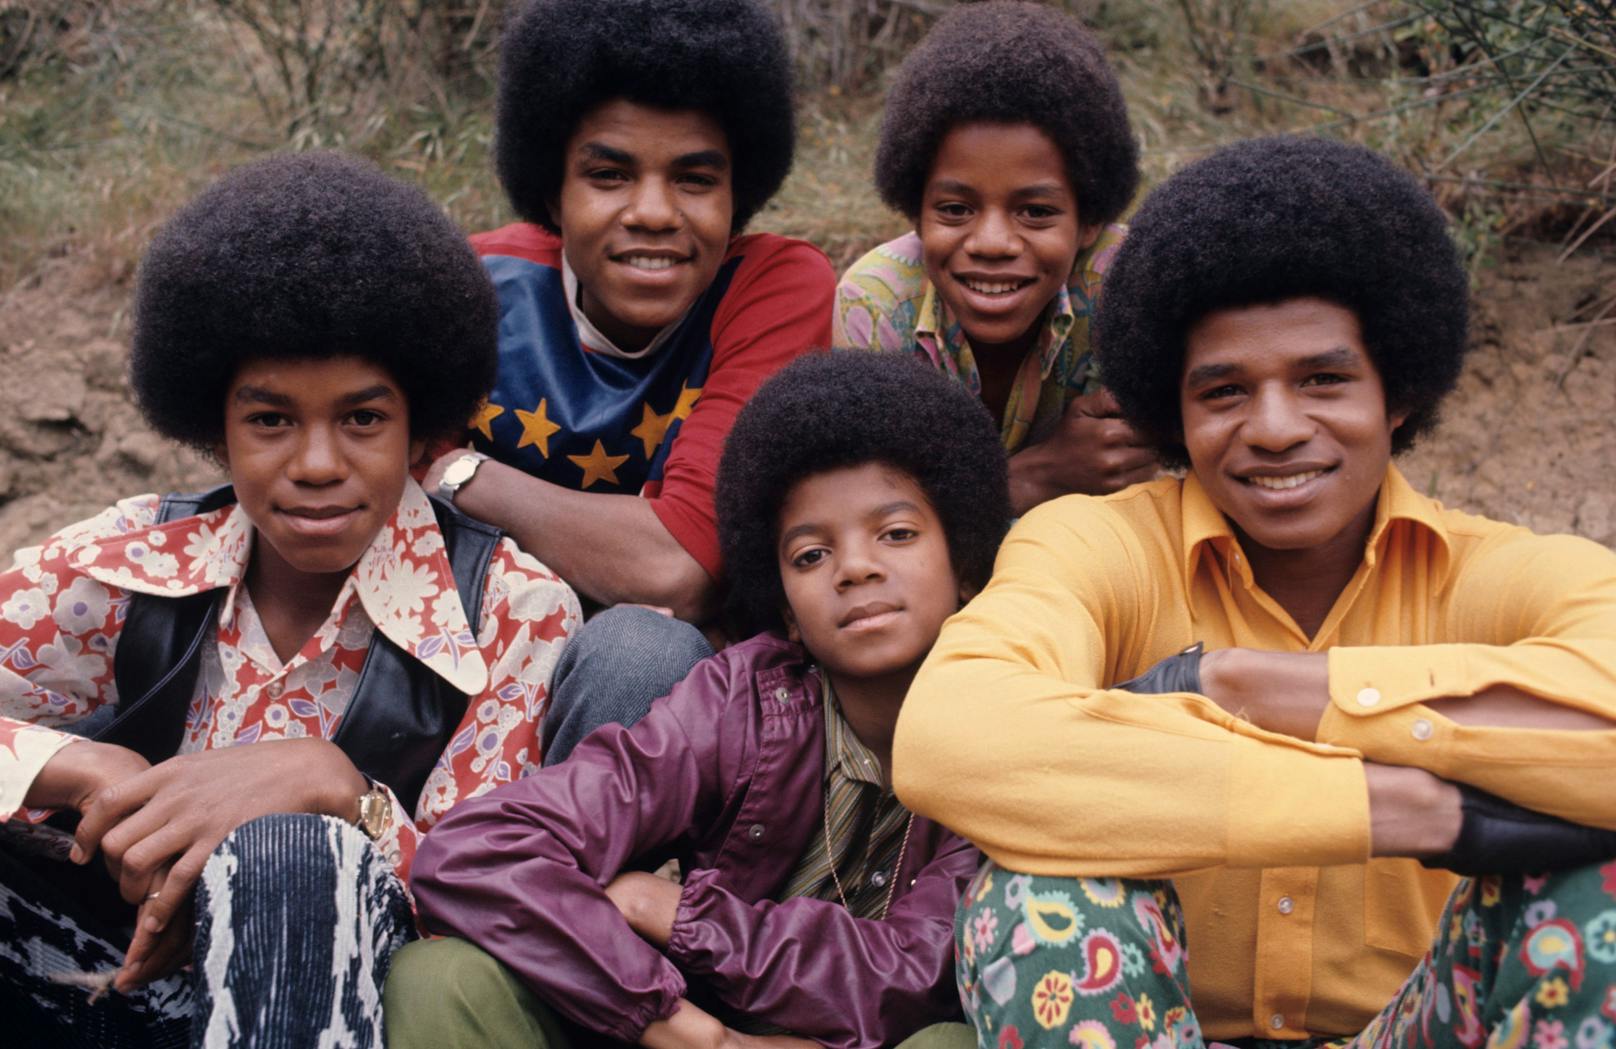 Michael begann seine Karriere als Mitglied der "Jackson 5", einer Popgruppe, die von seinen Brüdern geleitet wurde. Ihr Debütalbum "Diana Ross Presents The Jackson 5" war ein großer Erfolg.